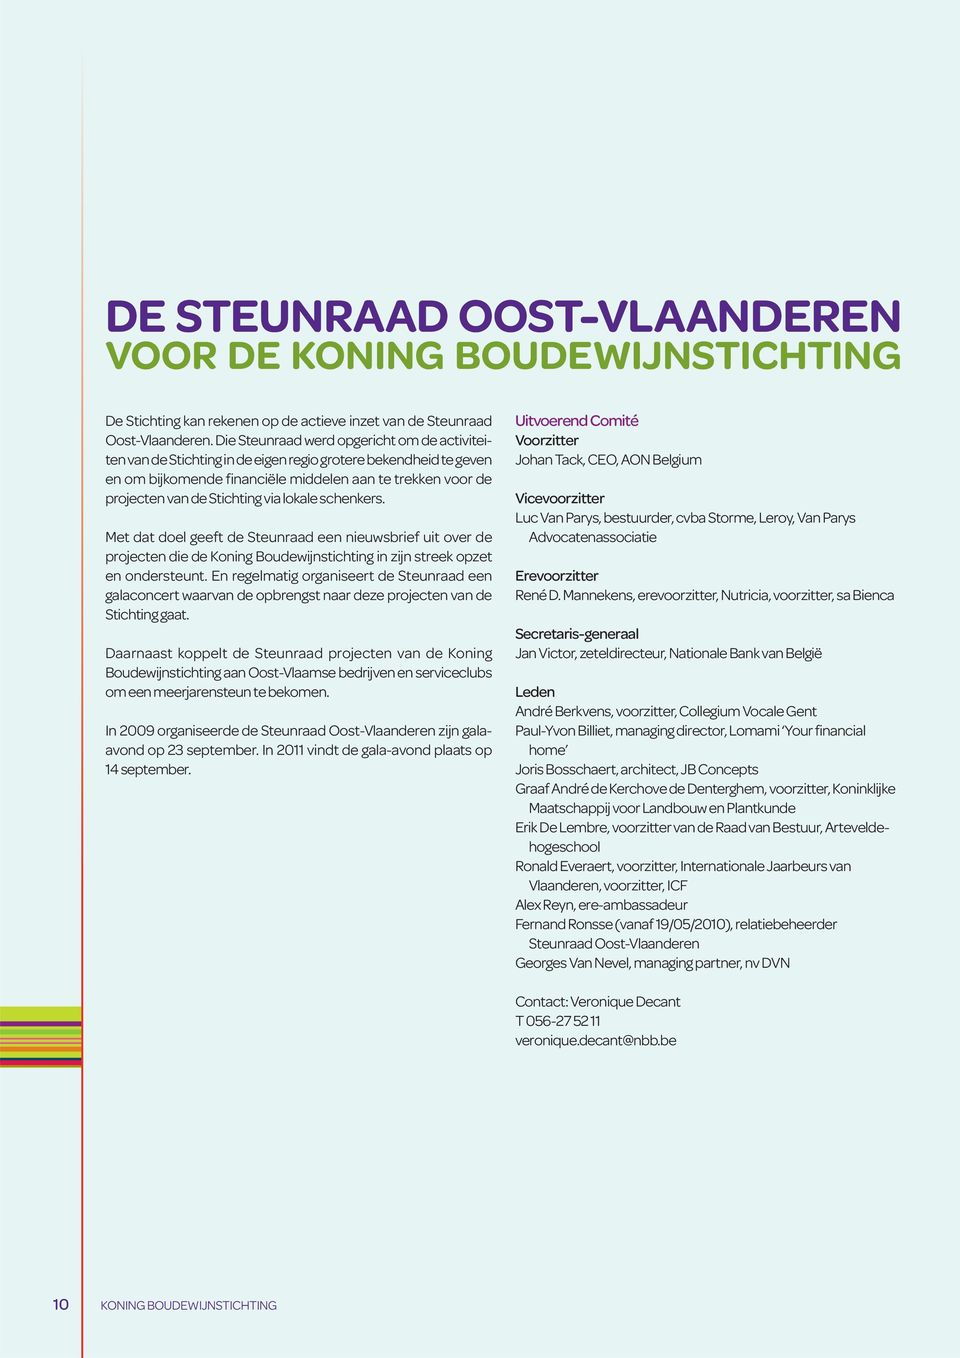 via lokale schenkers. Met dat doel geeft de Steunraad een nieuwsbrief uit over de projecten die de Koning Boudewijnstichting in zijn streek opzet en ondersteunt.